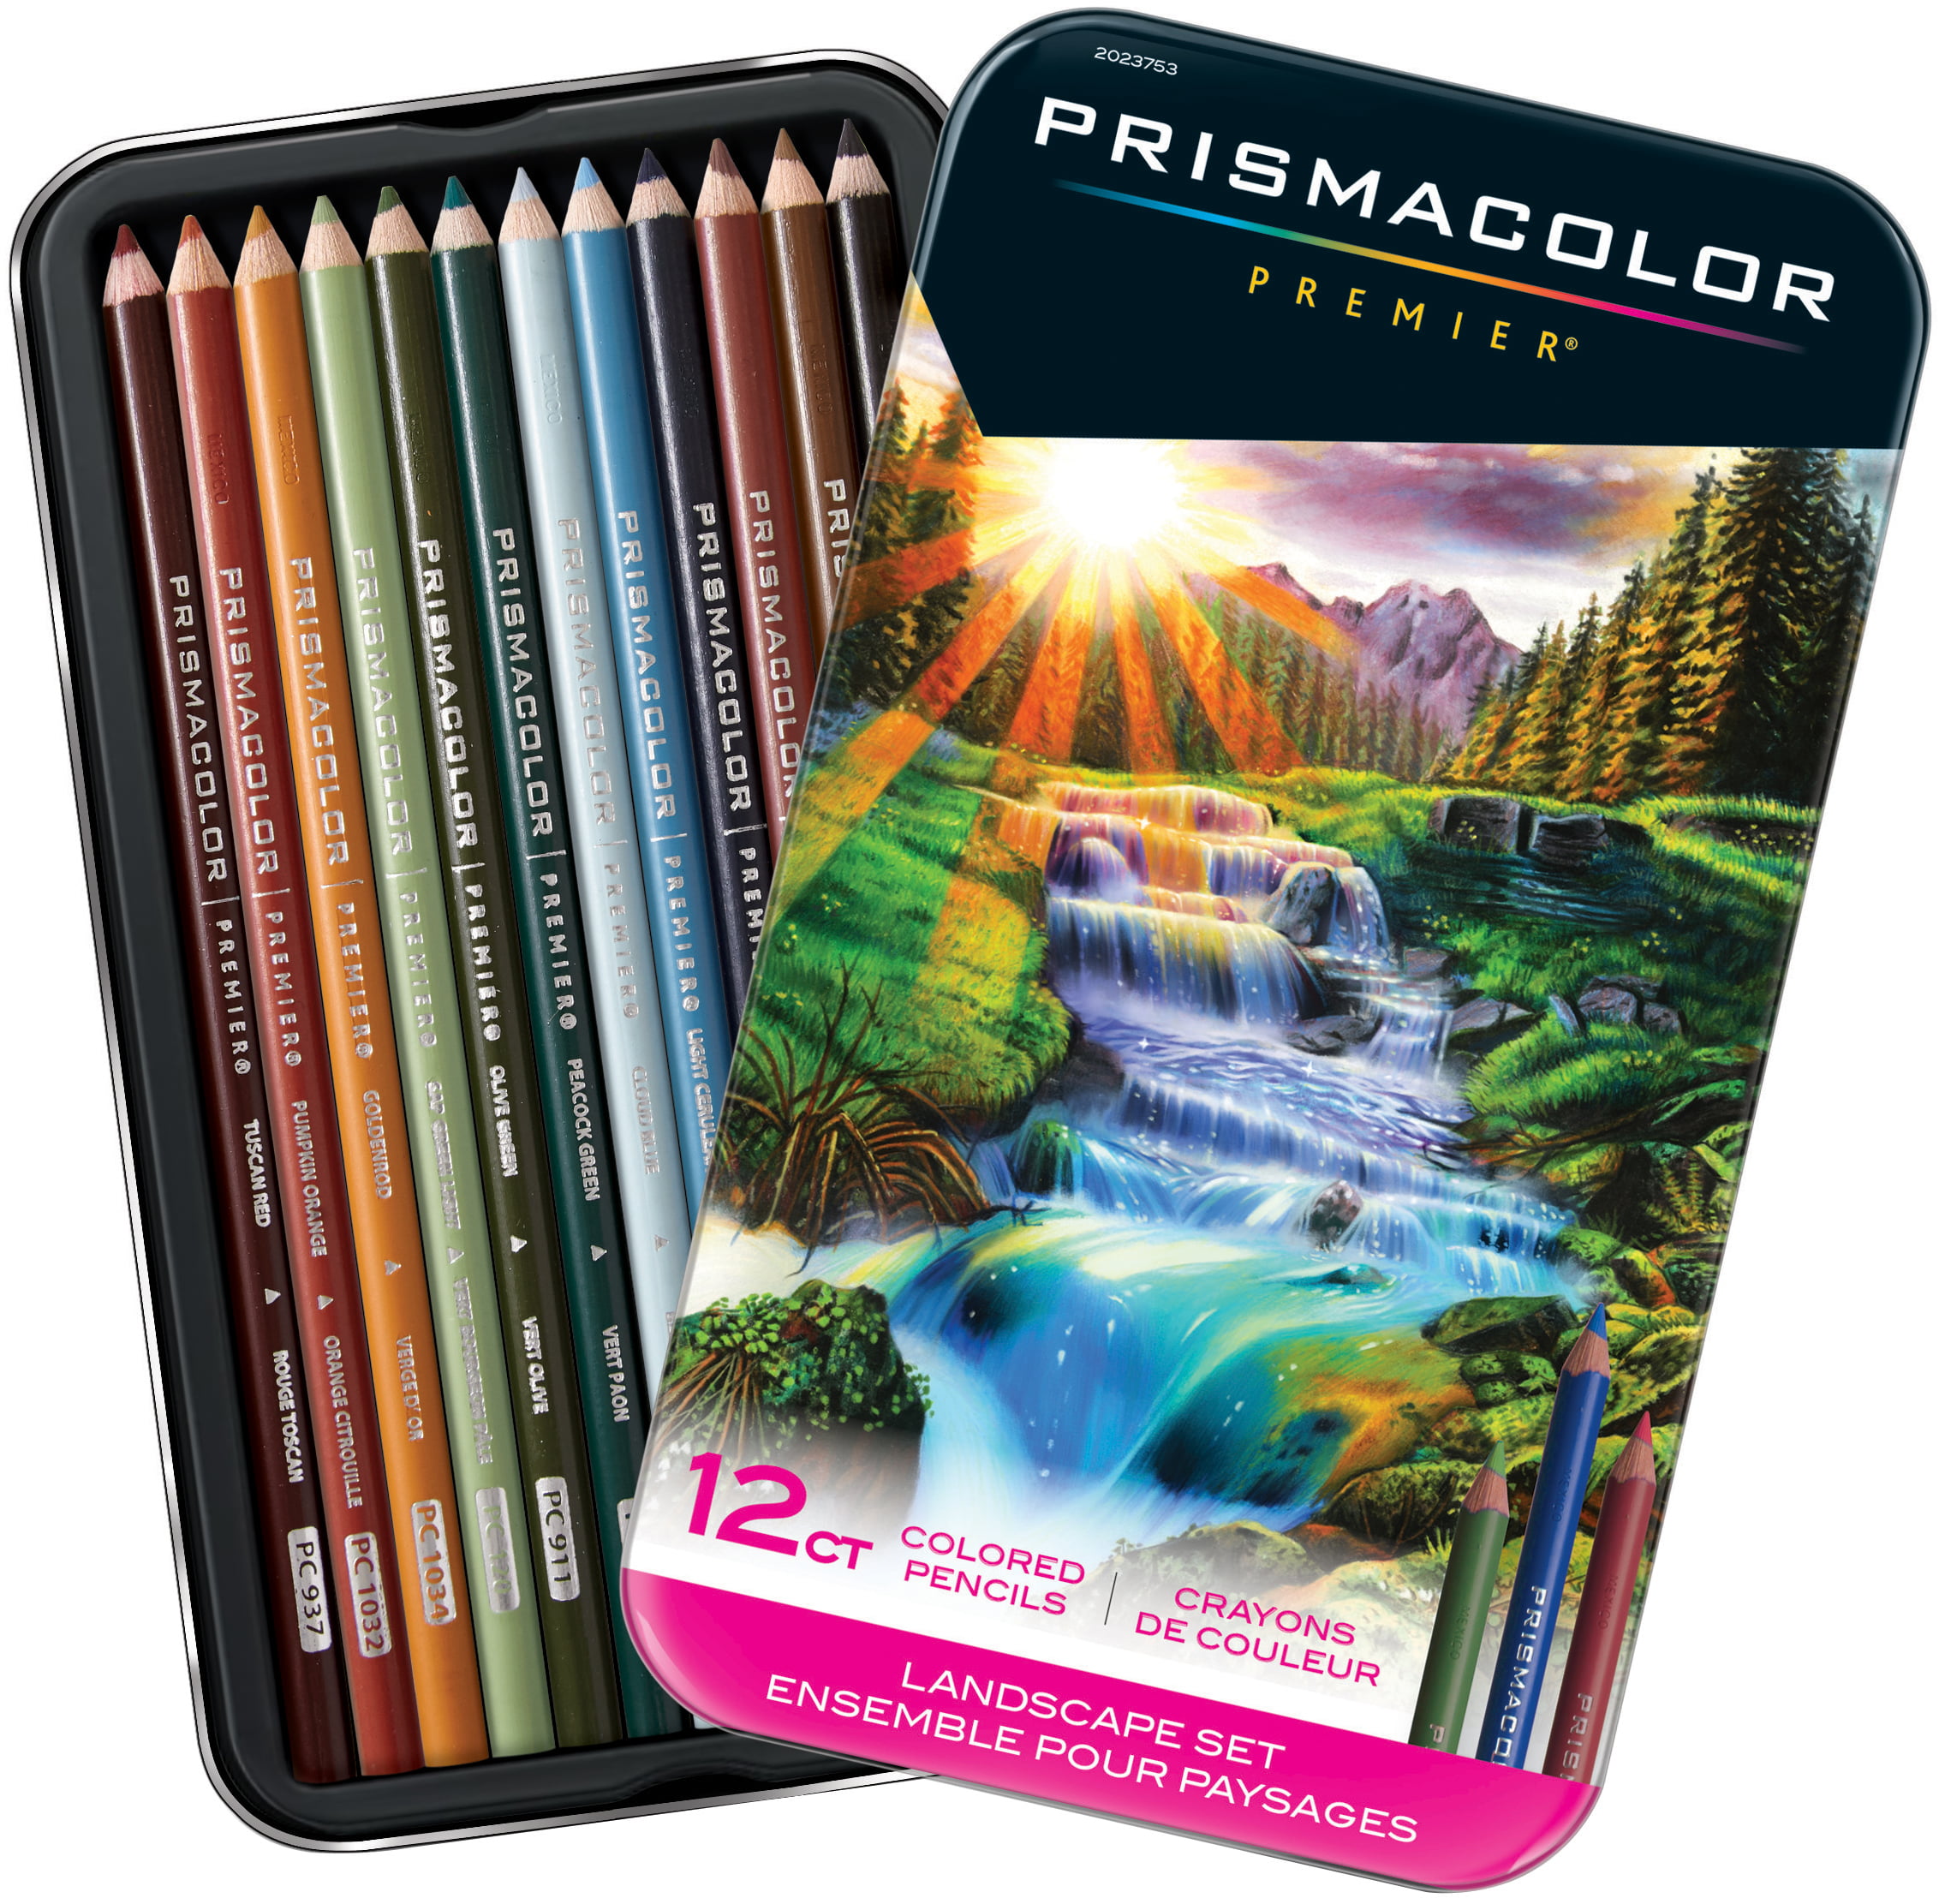 prismacolor-premier-colored-pencils-soft-core-landscape-set-12-count-walmart